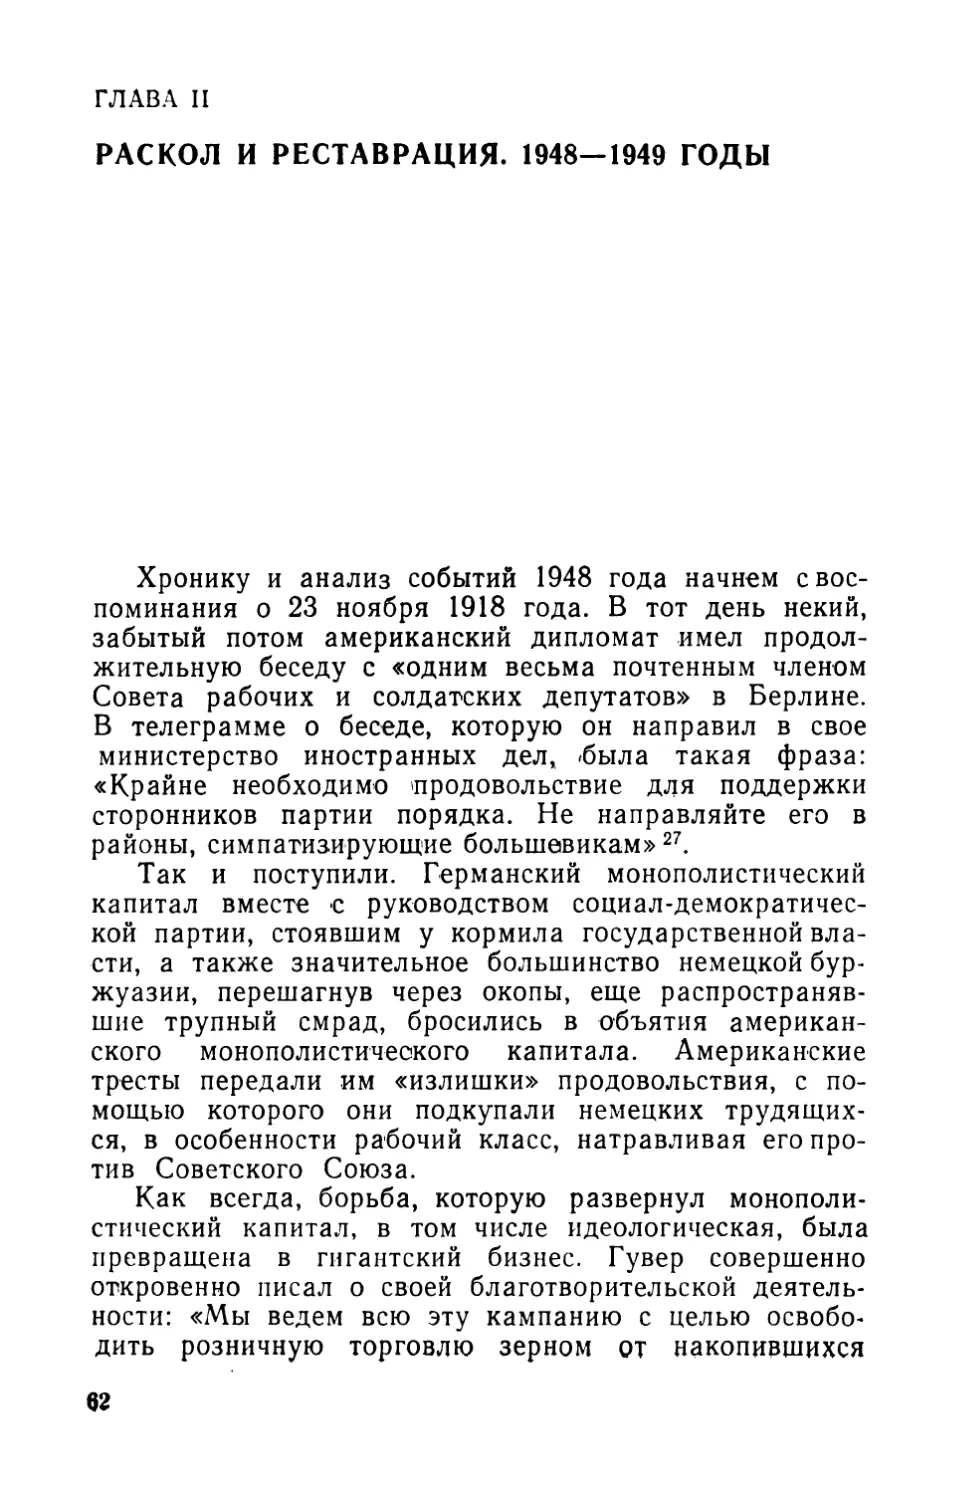 ГЛАВА II. РАСКОЛ И РЕСТАВРАЦИЯ. 1948—1949 ГОДЫ